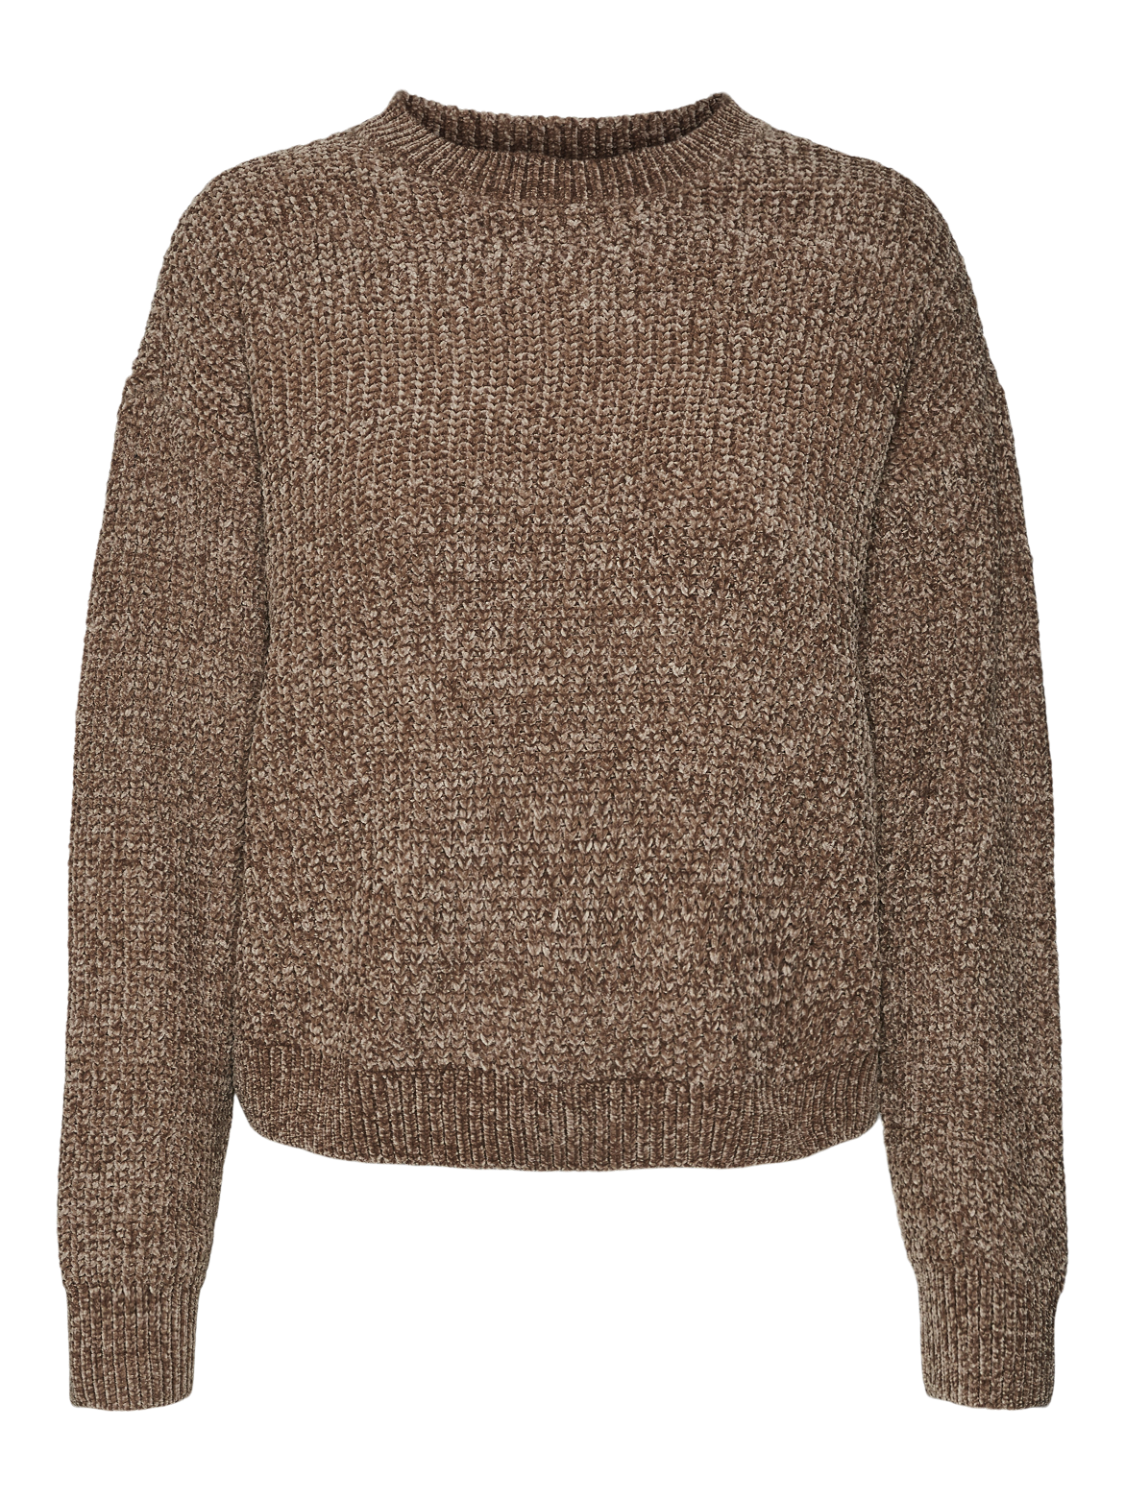 VMAGATE Pullover - Brown Lentil